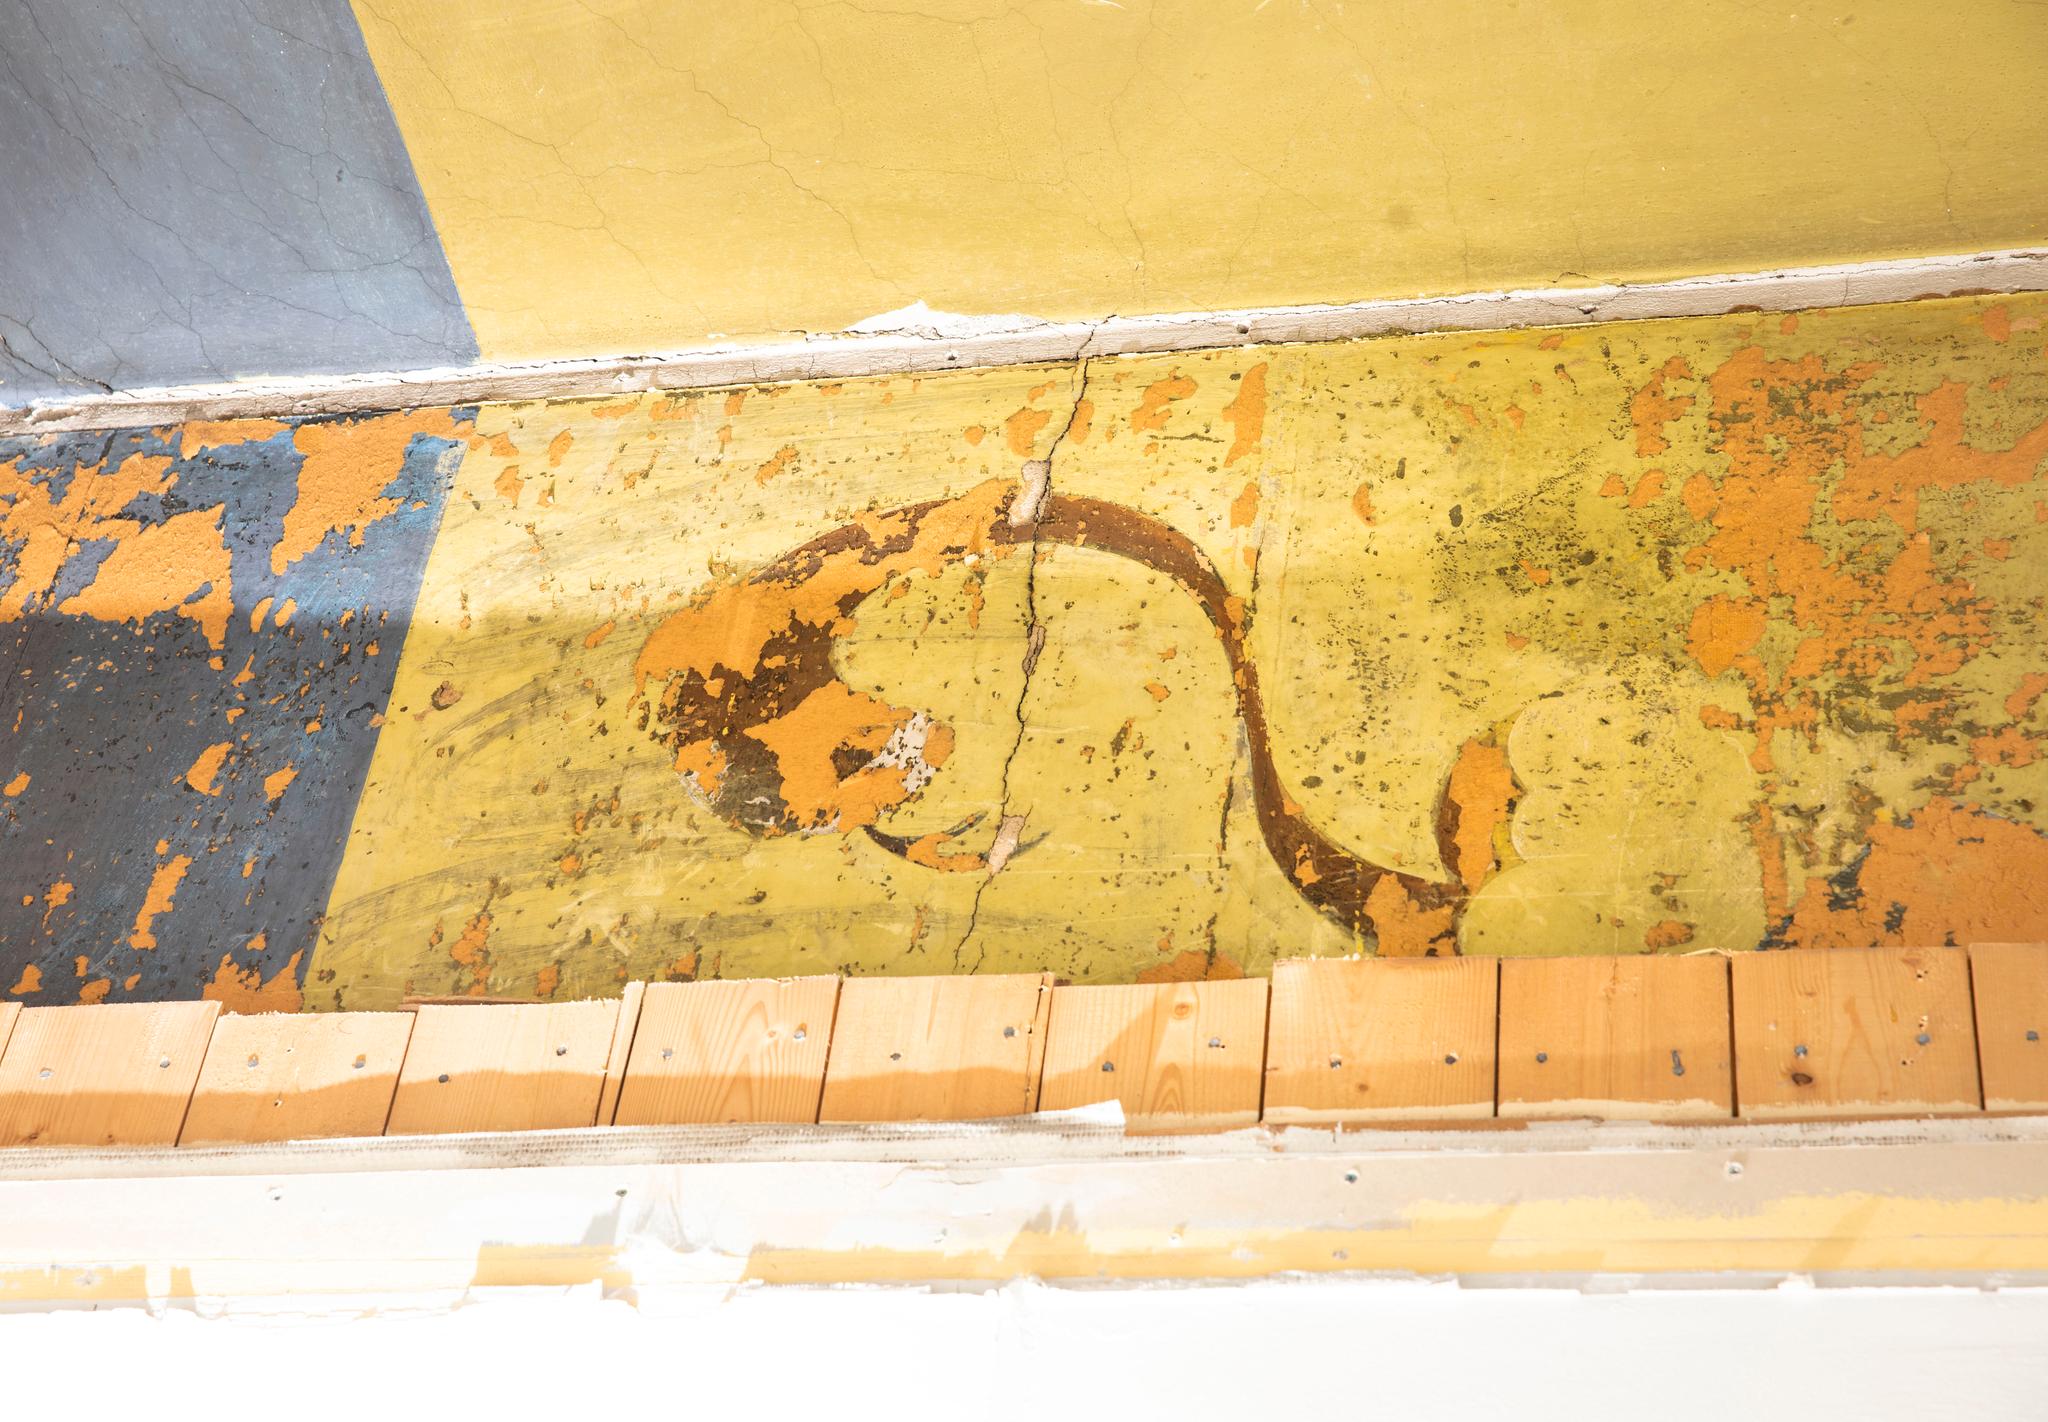 Denne slangeinspirerte figuren dukket frem da bygningsarbeiderne begynte å rive deler av veggen.